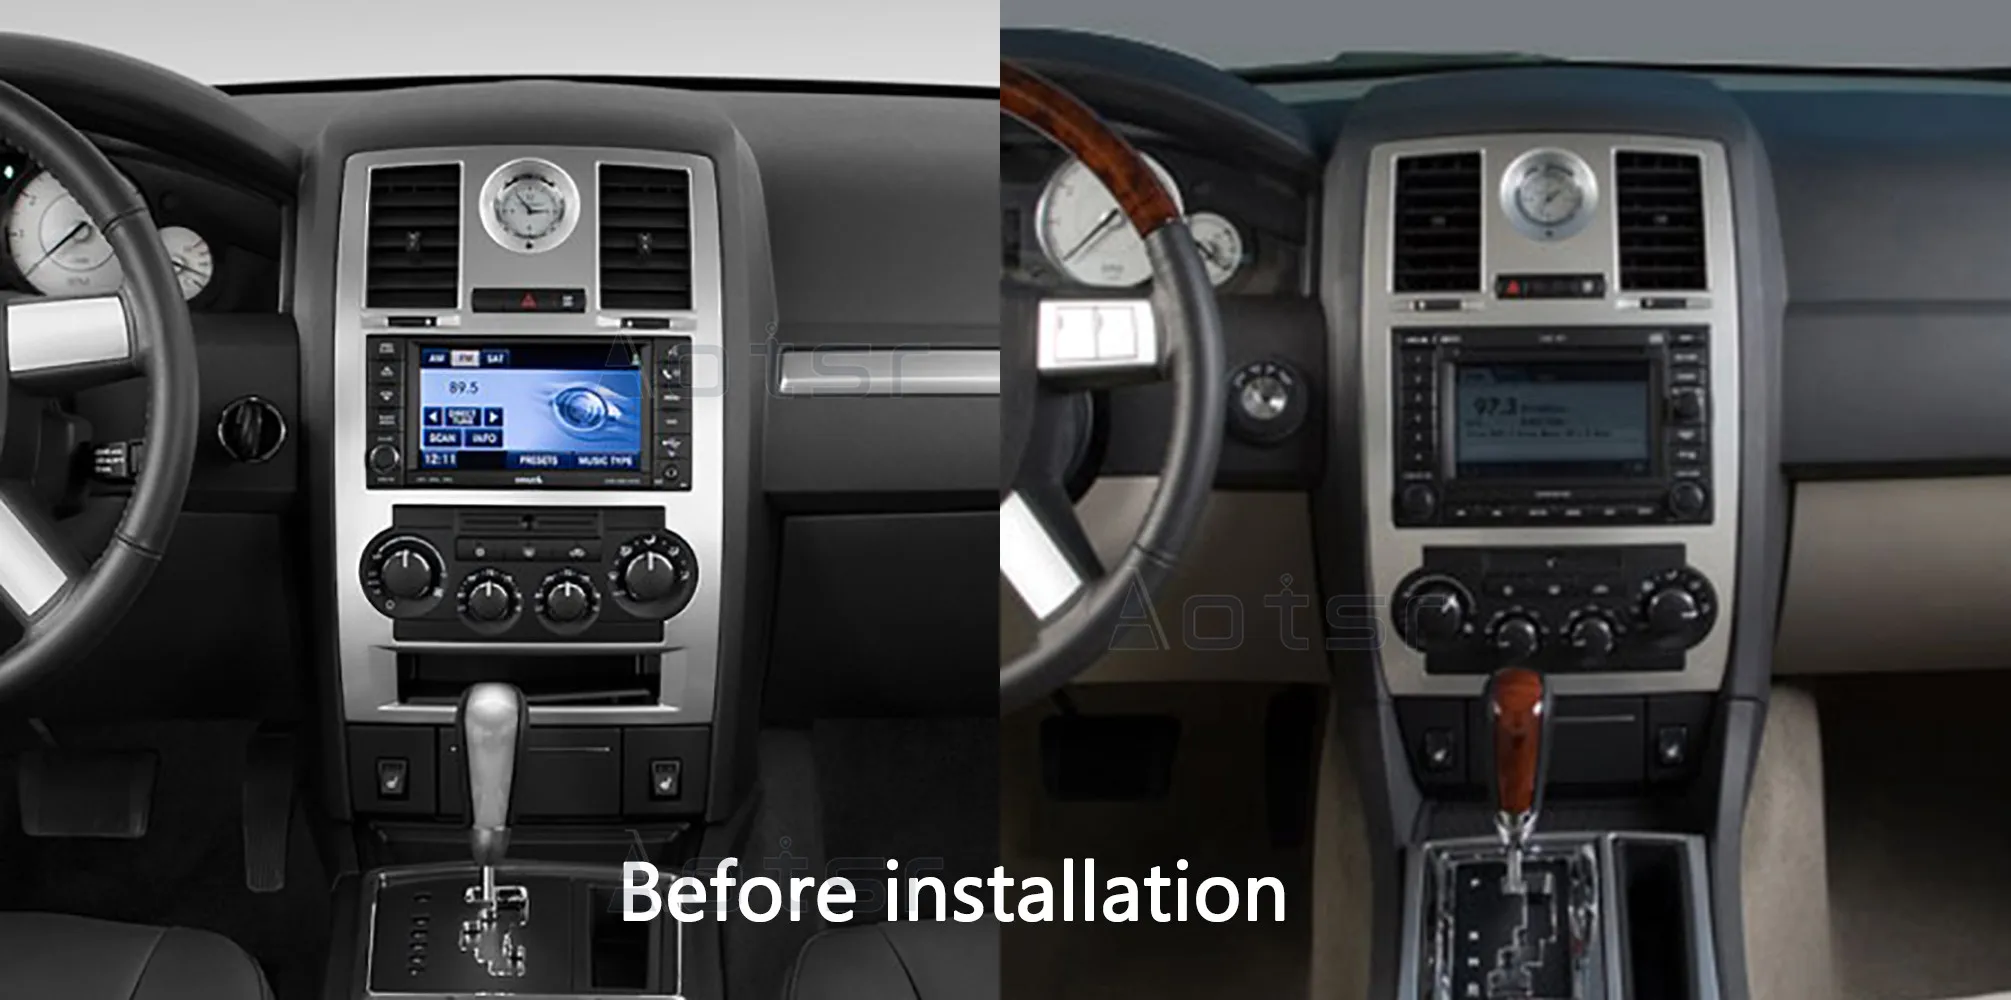 Android 9.0 64G PX6 Auto DVD Atskaņotājs, GPS Navigācijas Chrysler 300C 1 2004. - 2011. gads Auto Auto Radio Stereo Multimedia Player HeadUnit